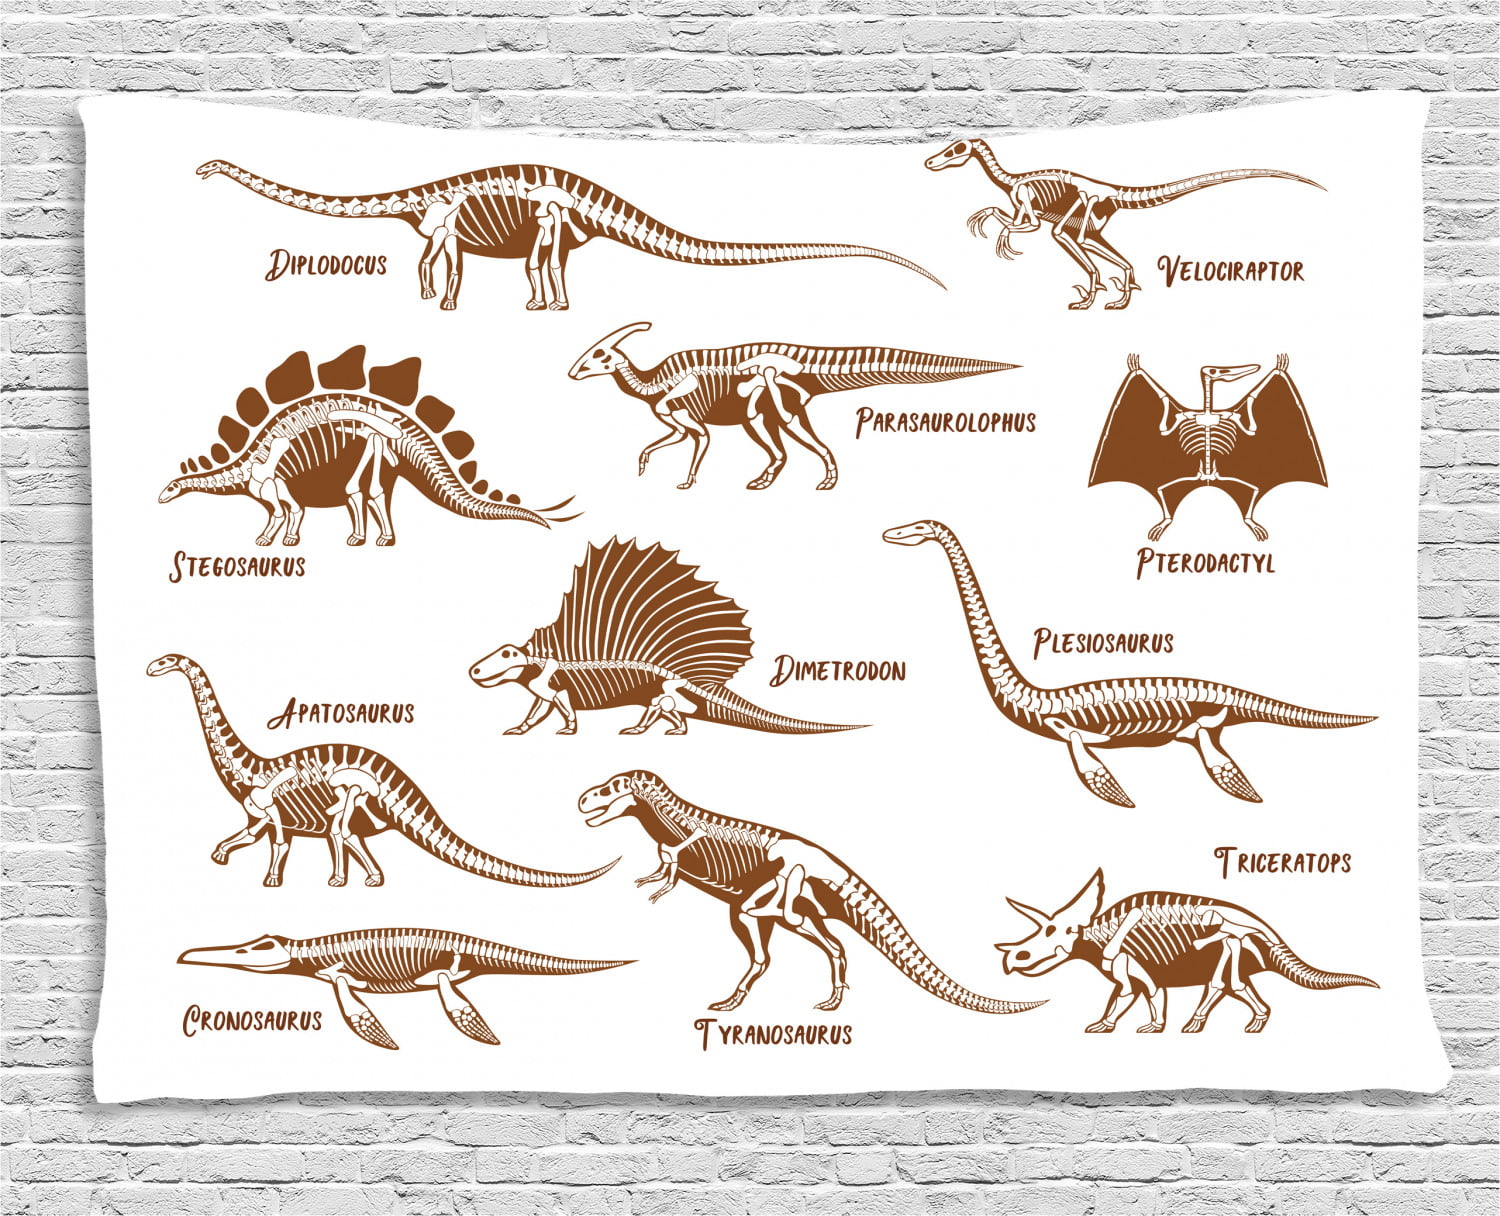 triassic animals